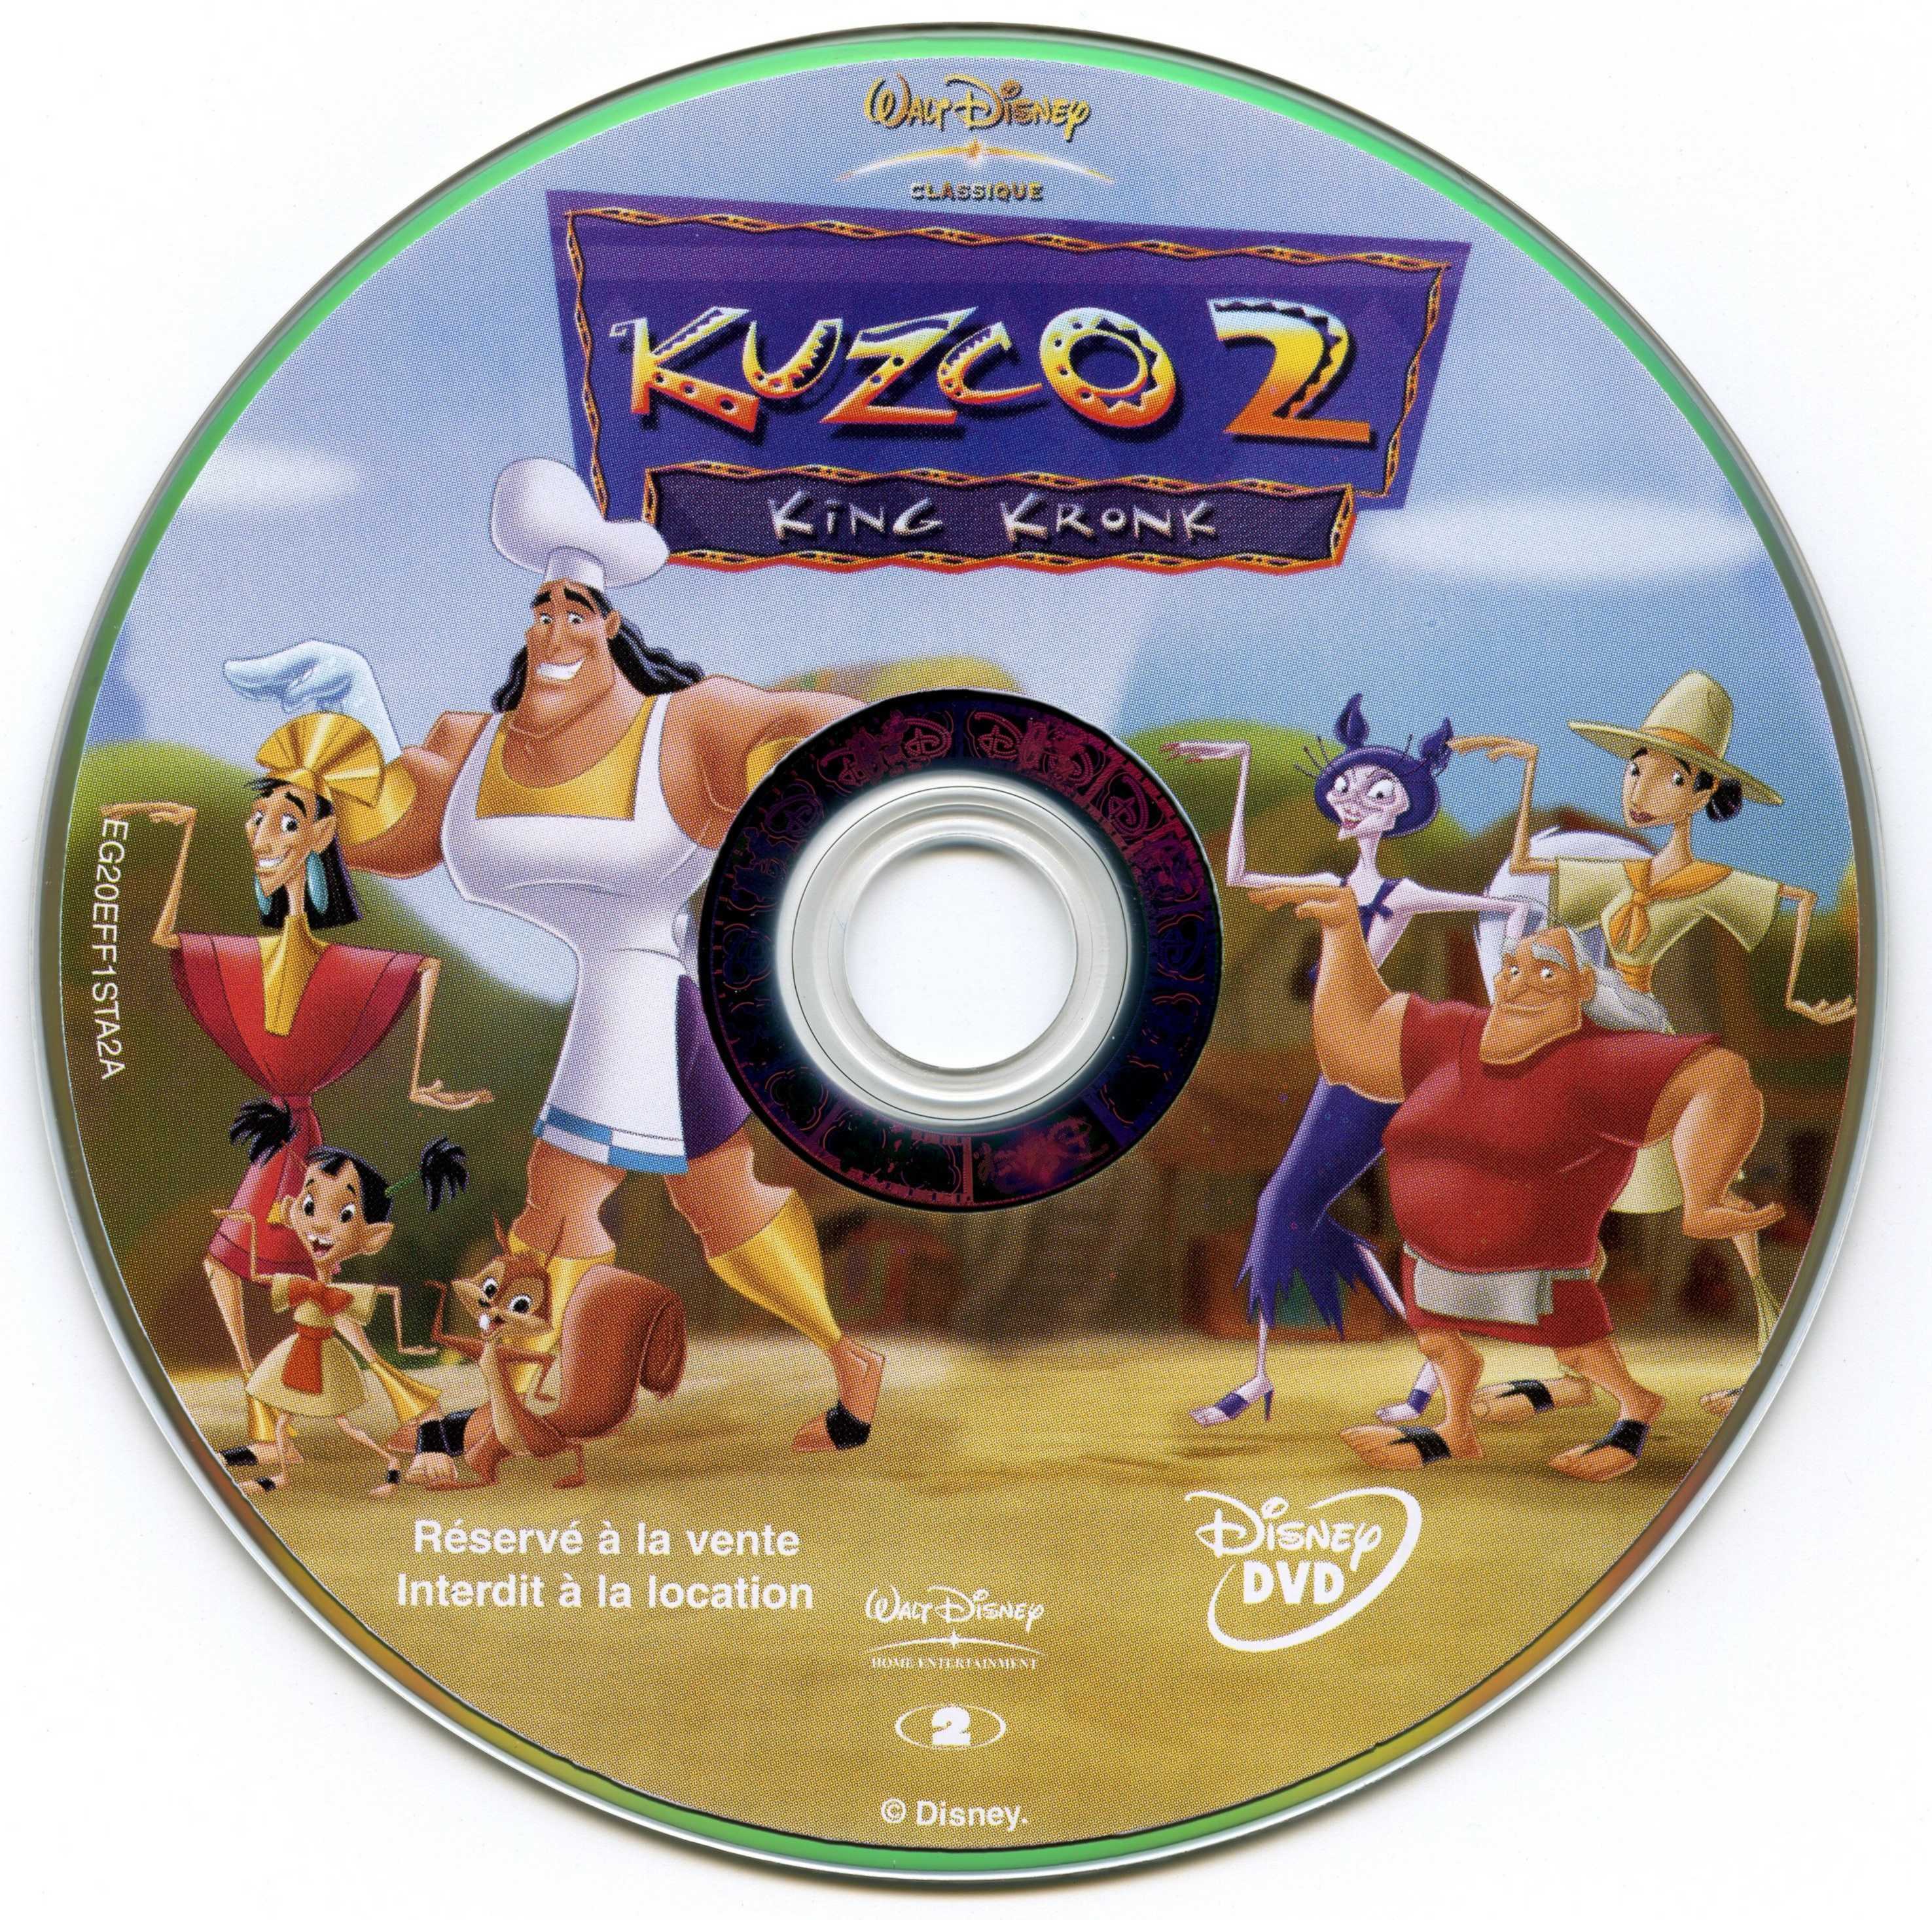 Kuzco 2